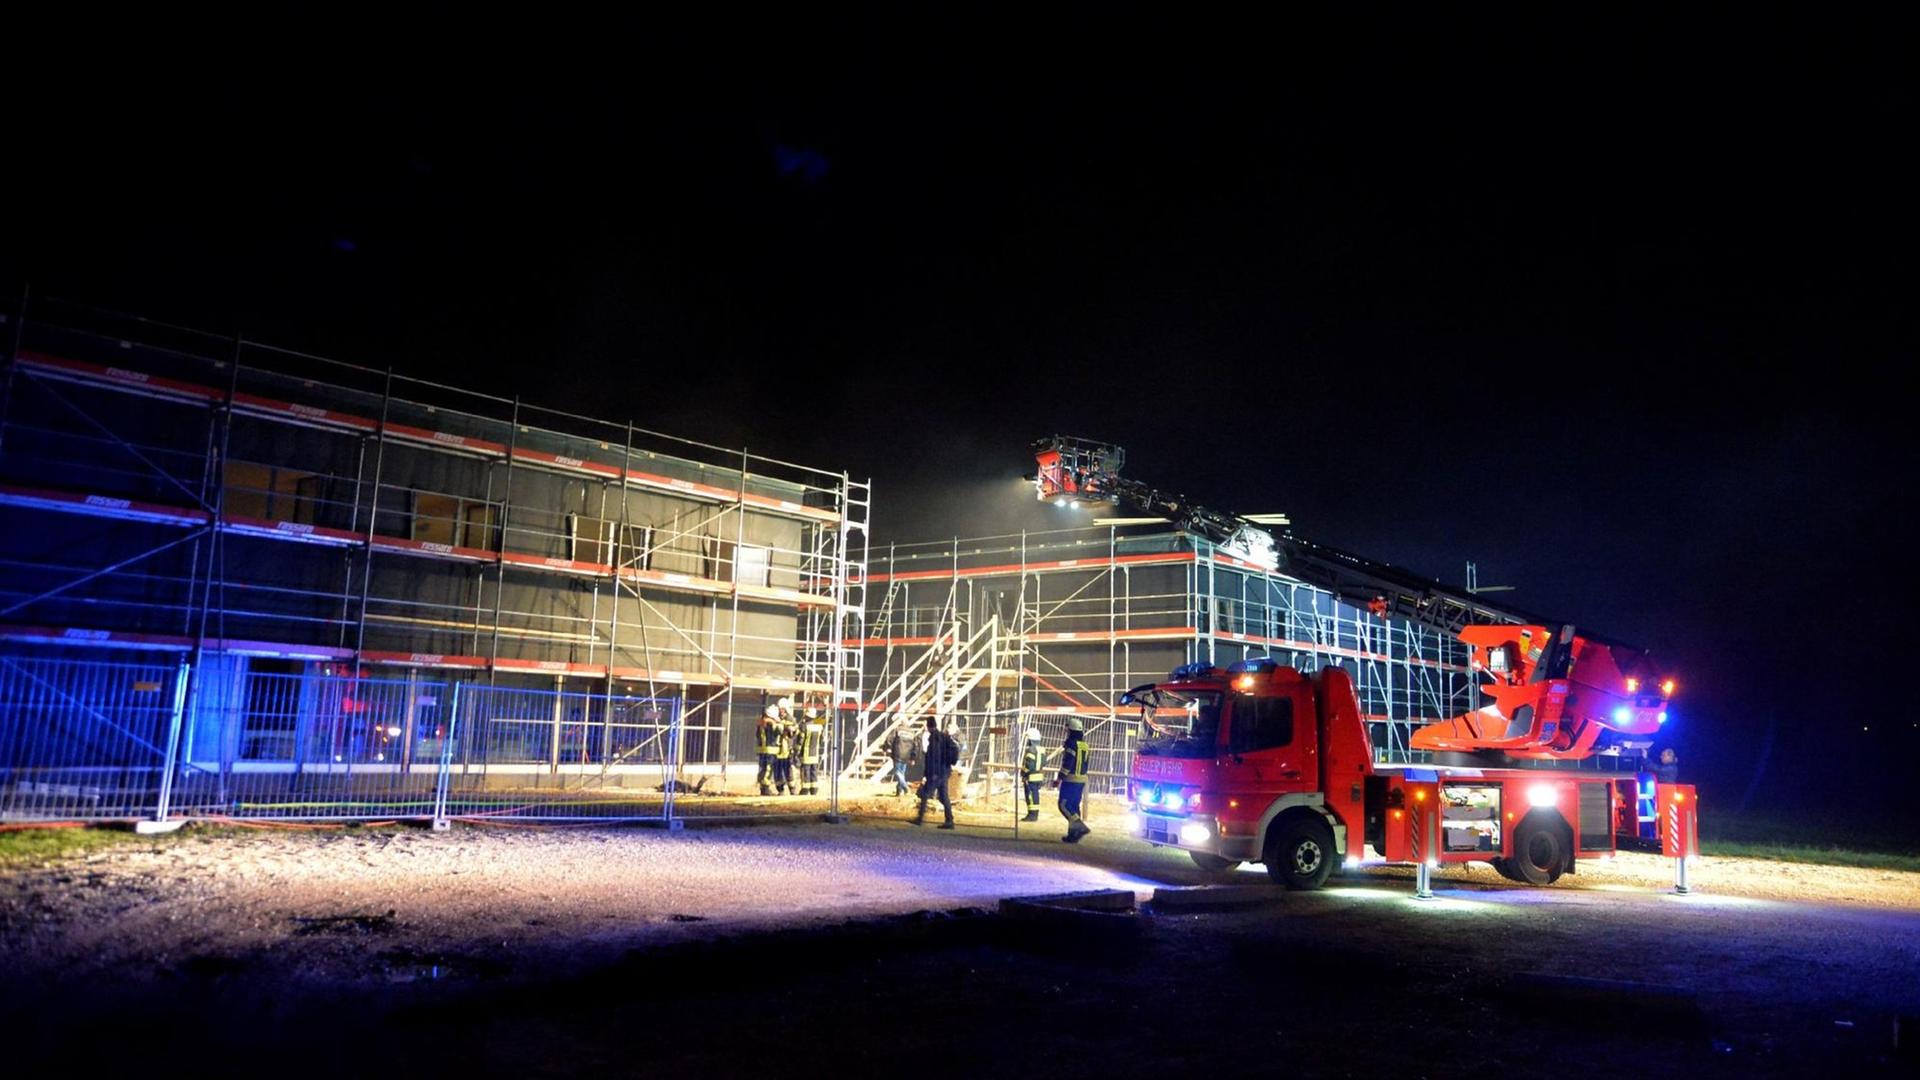 Die Feuerwehr ist am 25.12.2015 im Einsatz an einer im Bau befindlichen Flüchtlingsunterkunft in Schwäbisch Gmünd (Baden-Württemberg). Die Ermittler gehen davon aus, dass das Feuer gelegt wurde, wie Polizei und Stadtverwaltung mitteilten. Das Gebäude sollte im Frühjahr fertiggestellt werden und bis zu 120 Flüchtlinge beherbergen. Das Feuer habe nur geringen Schaden angerichtet.